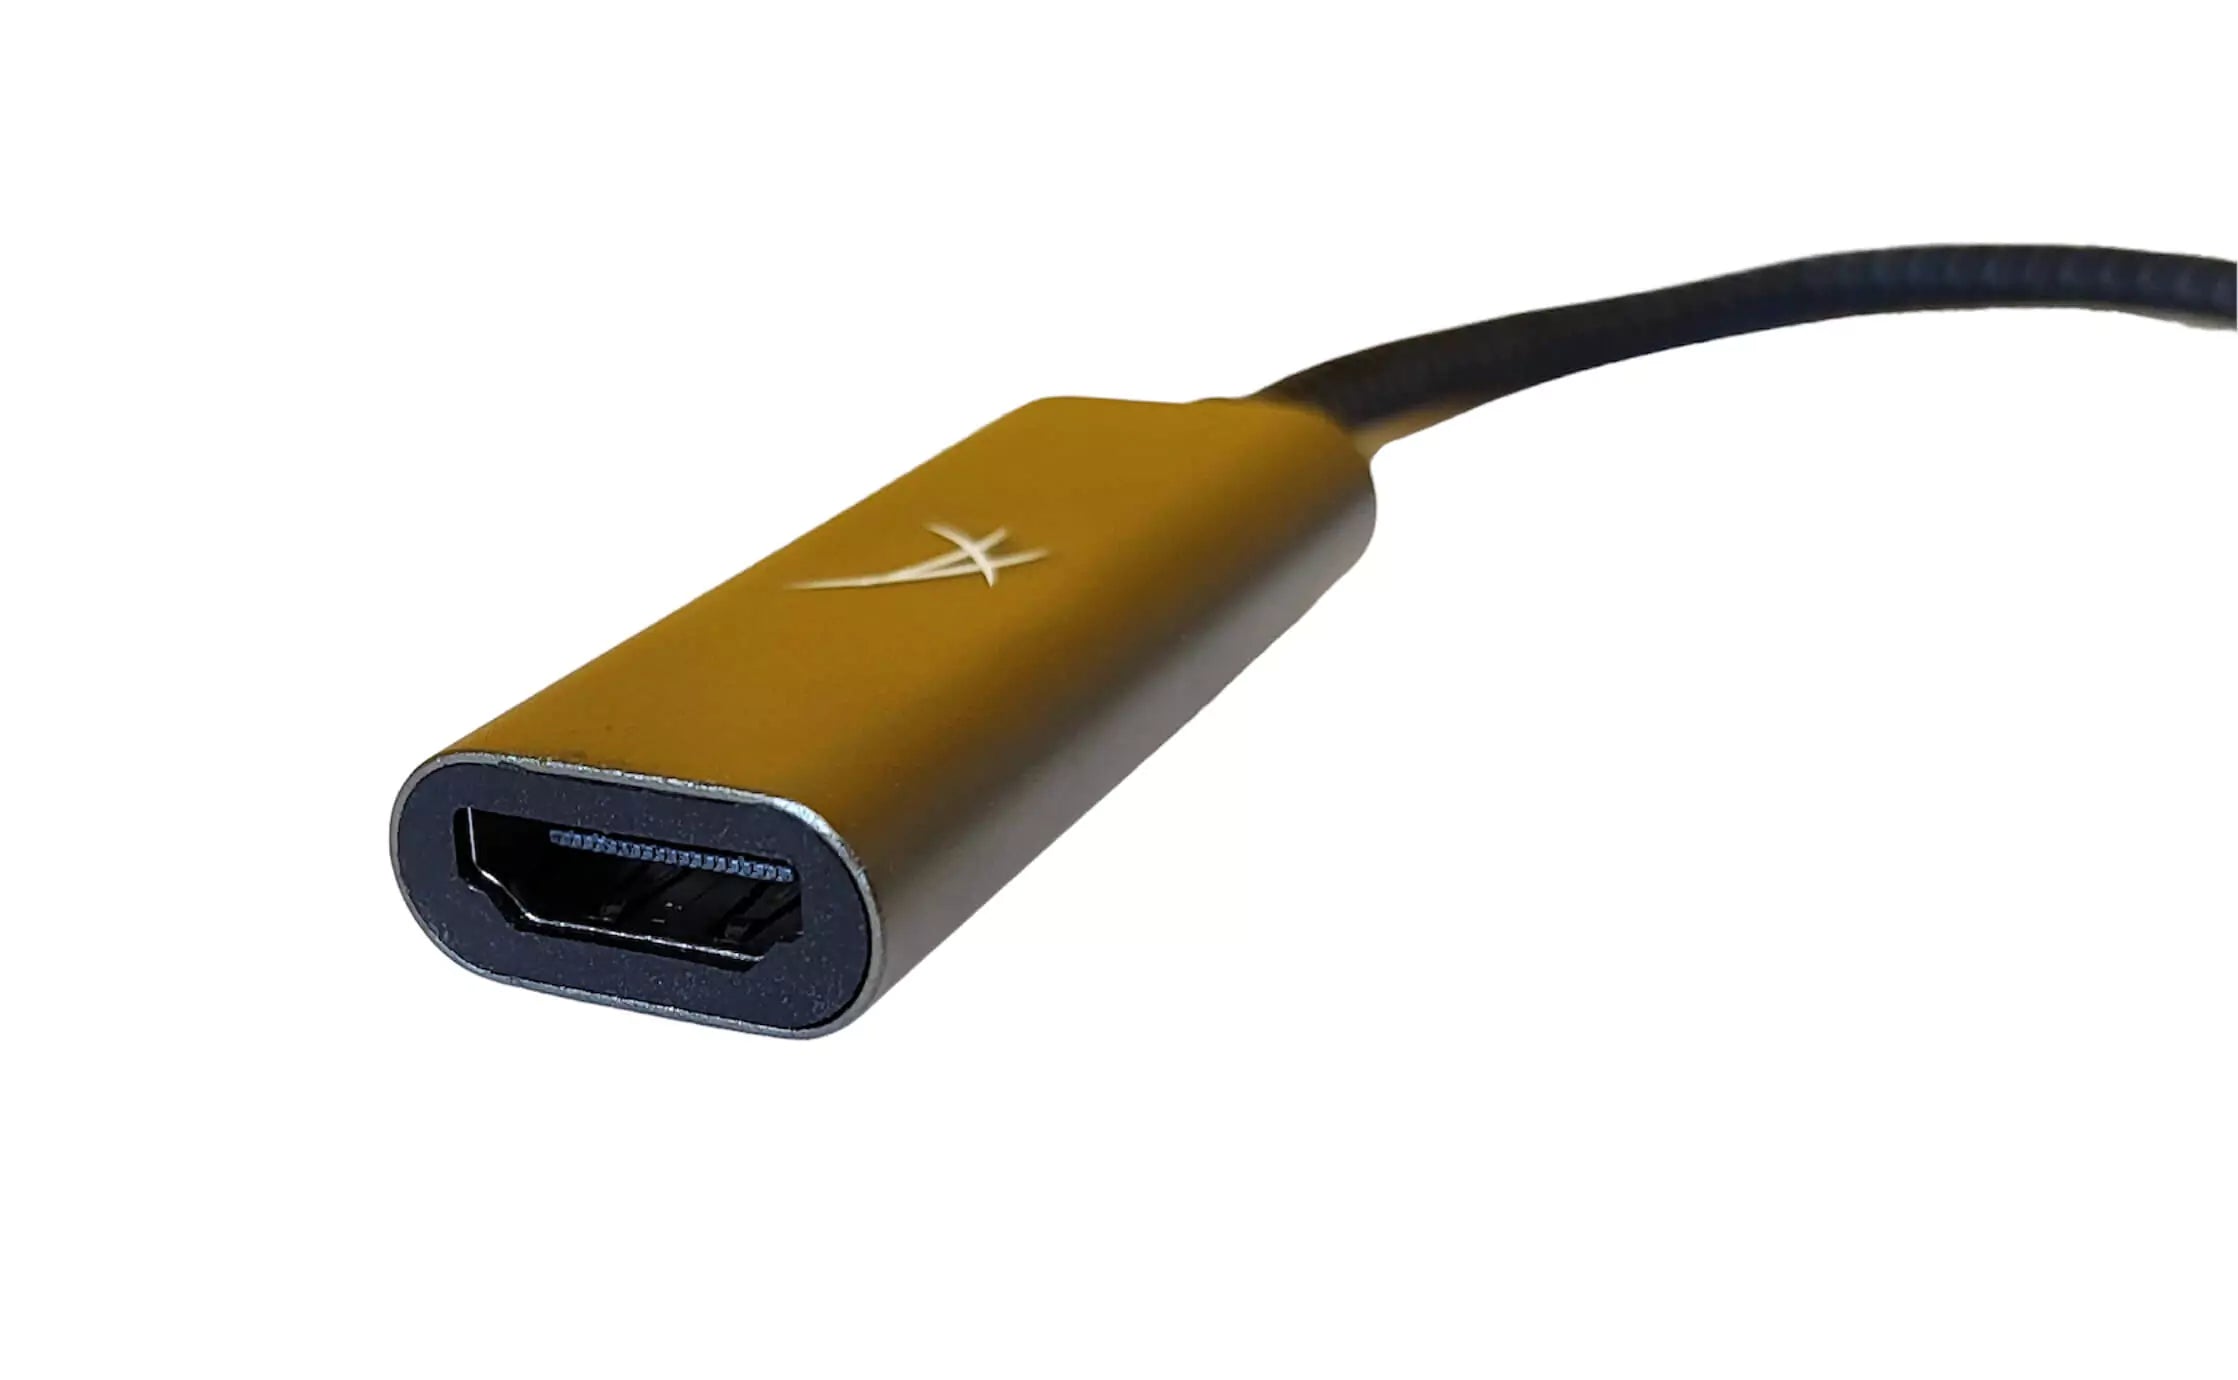 USB-Typ-C-zu-HDMI-Adapter 4K@60Hz ST0824-kompatibel Thunderbolt 3 zu HDMI kompaktes Design, perfekt für PC-Projektoren und Smartphones